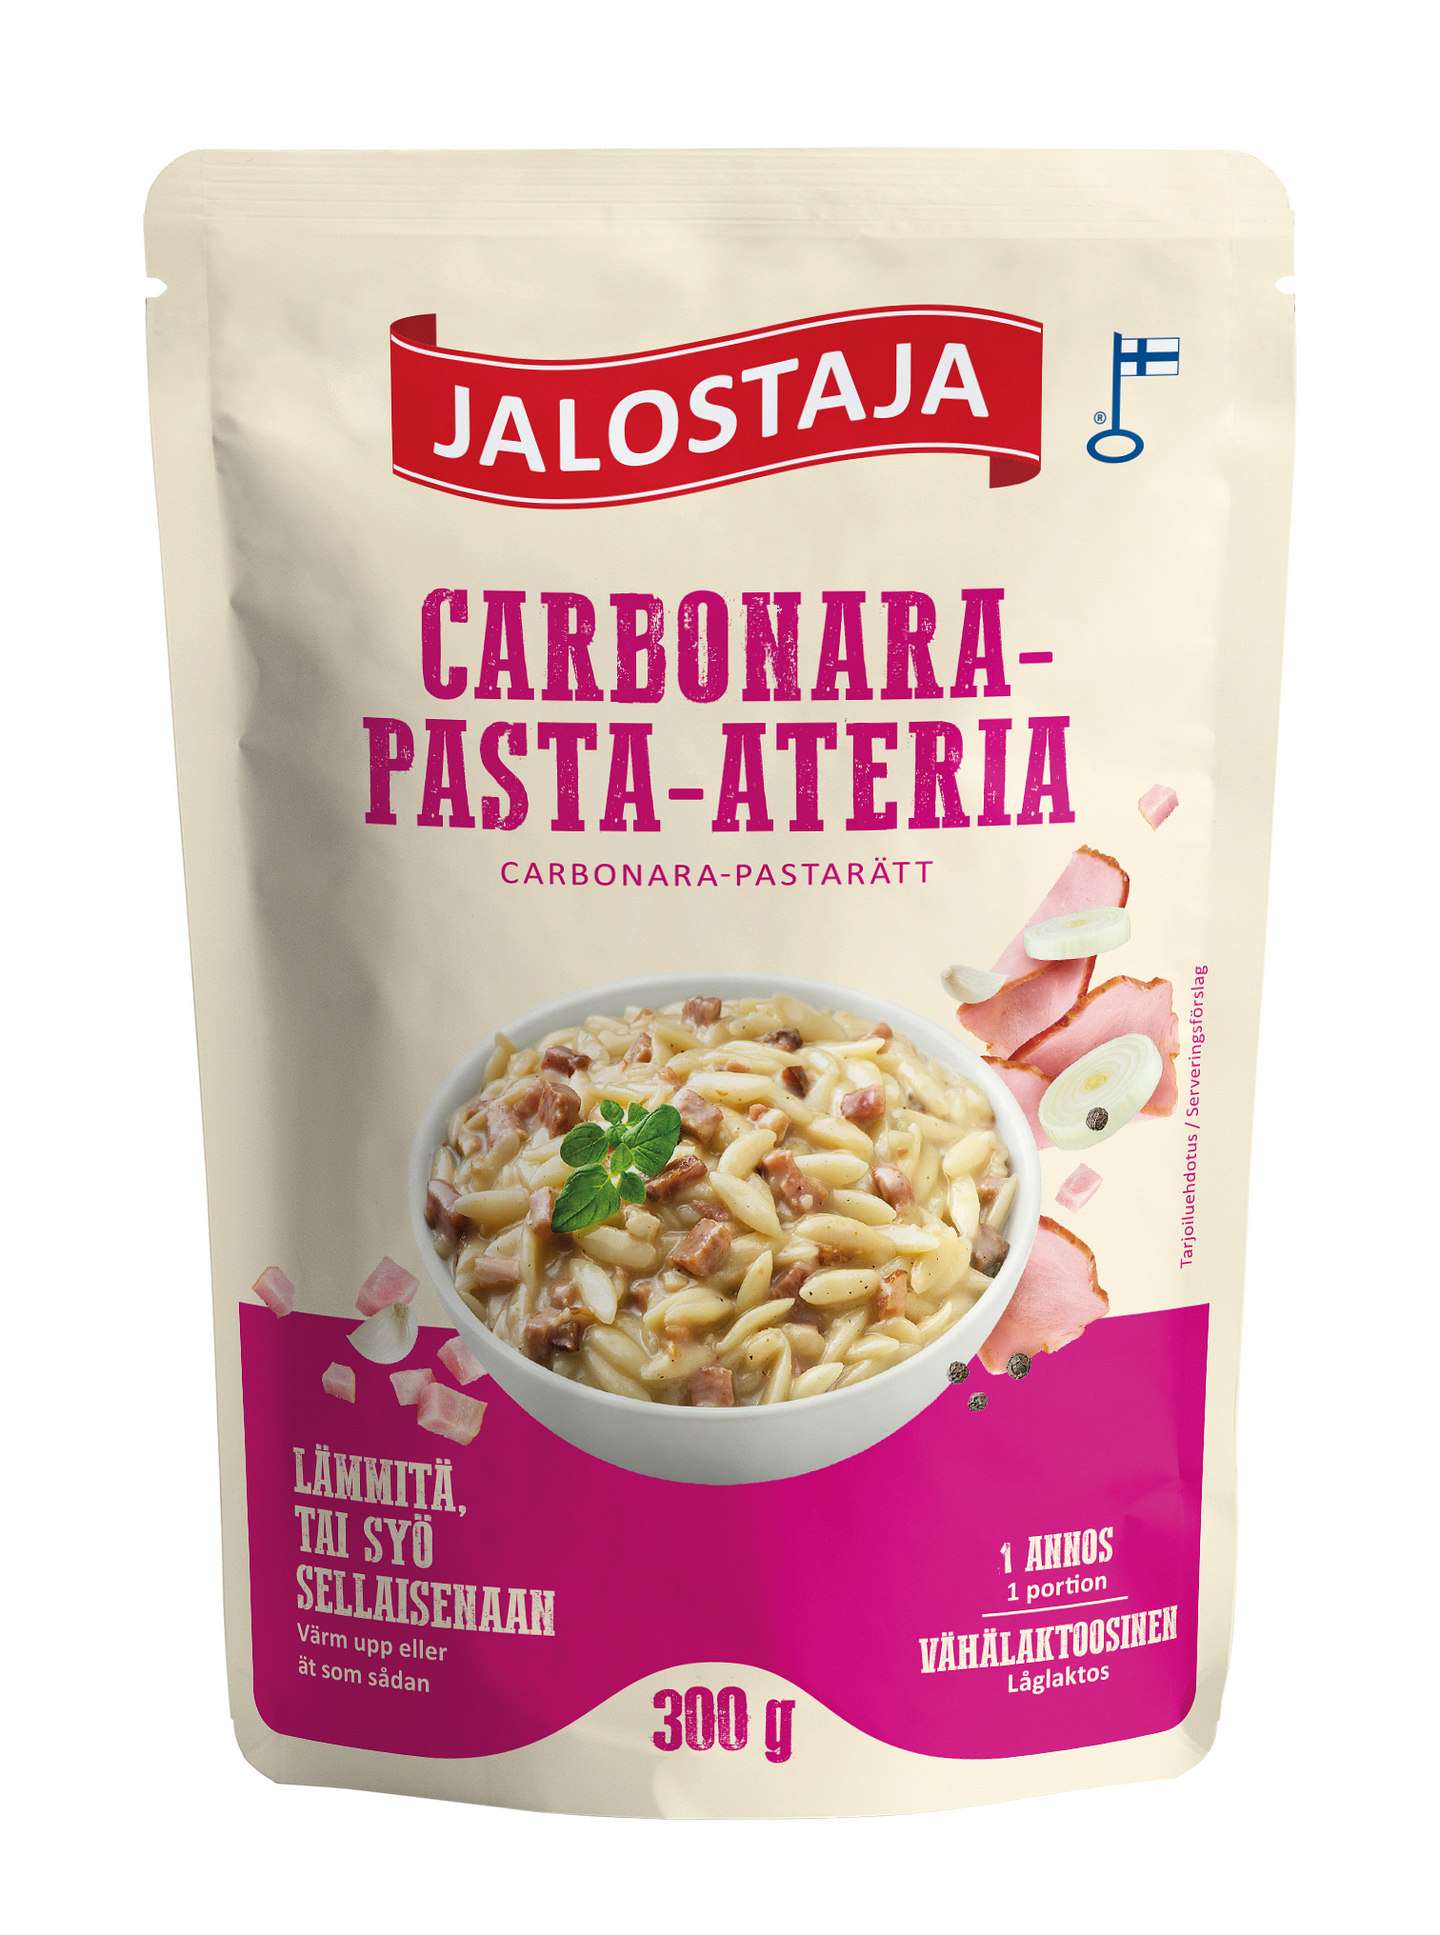 Jalostaja Pasta-ateria 300g Carbonara